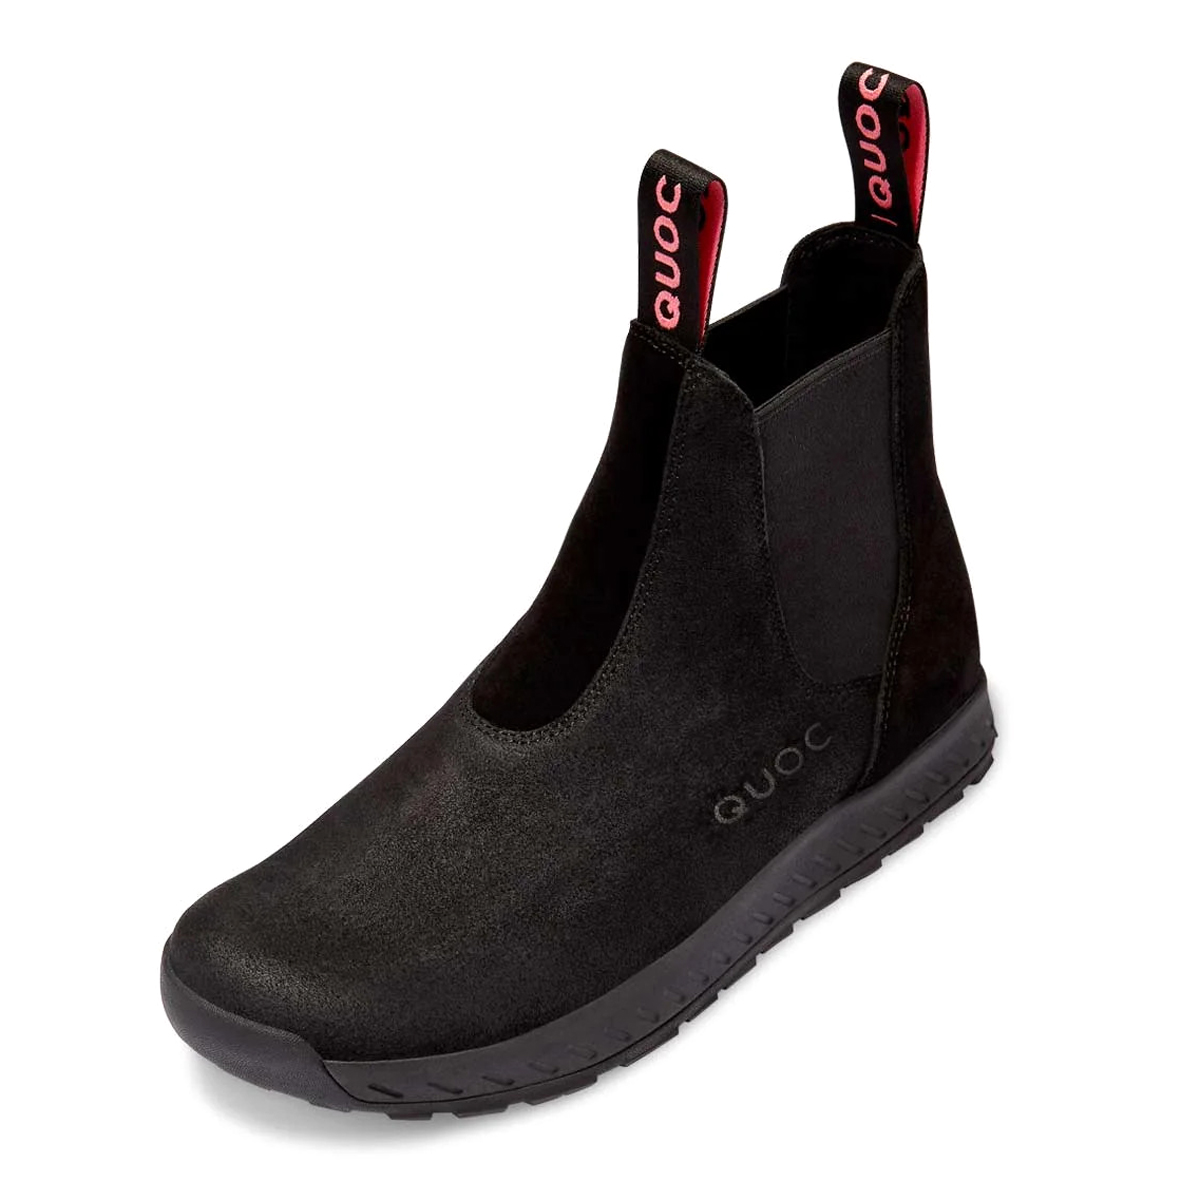 Productfoto van QUOC Chelsea Boot City Shoes - black